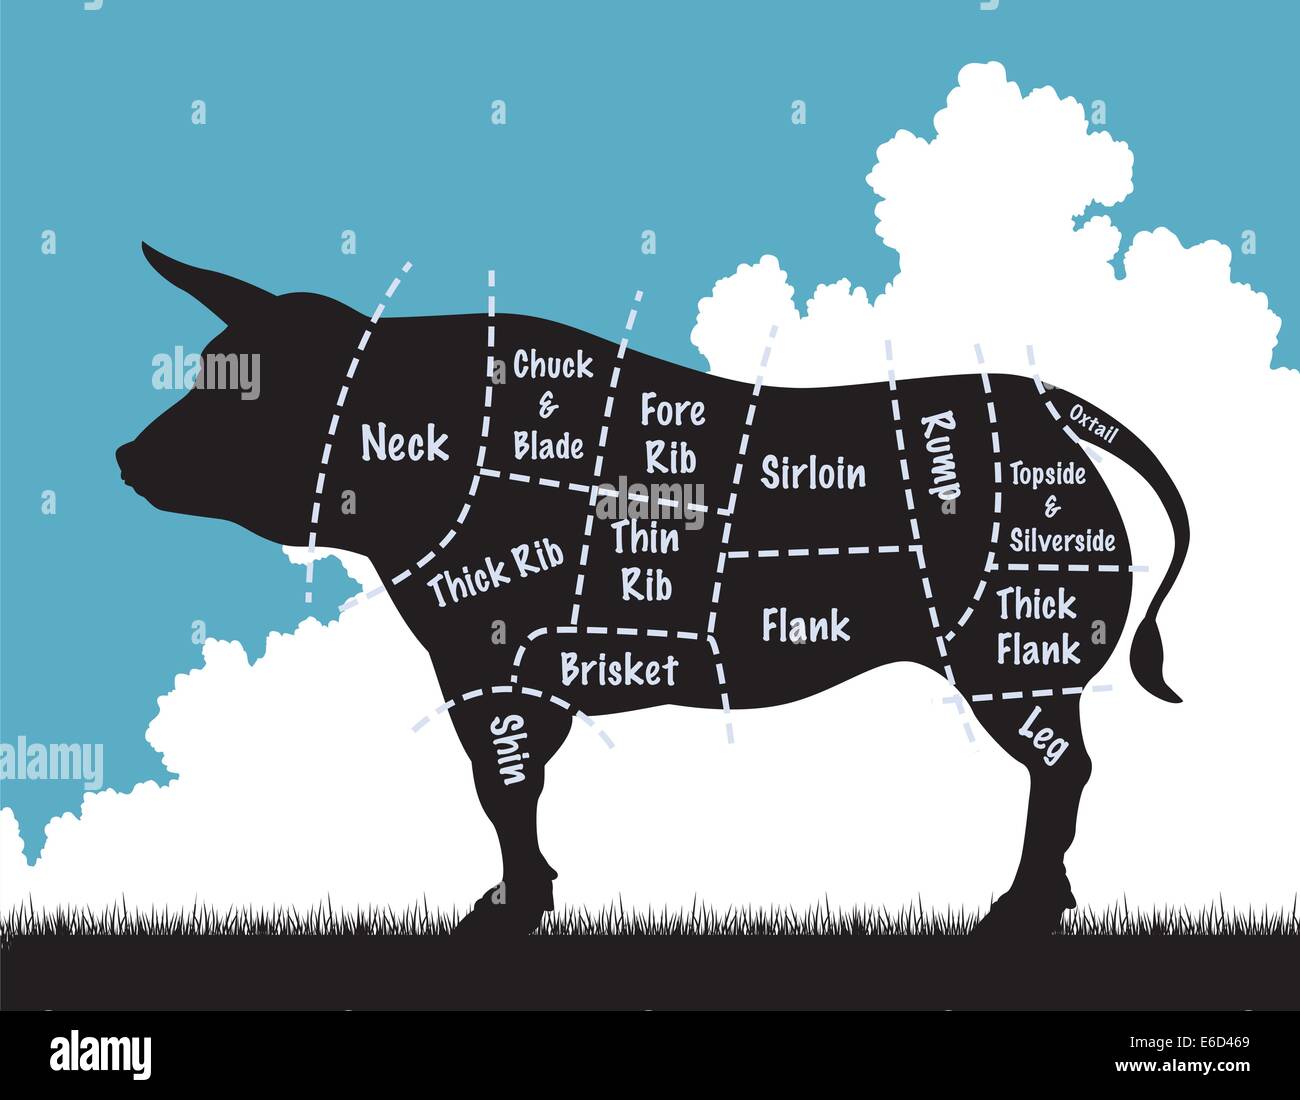 Illustation vectorial editable de una vaca silueta mostrando los cortes de carne Ilustración del Vector